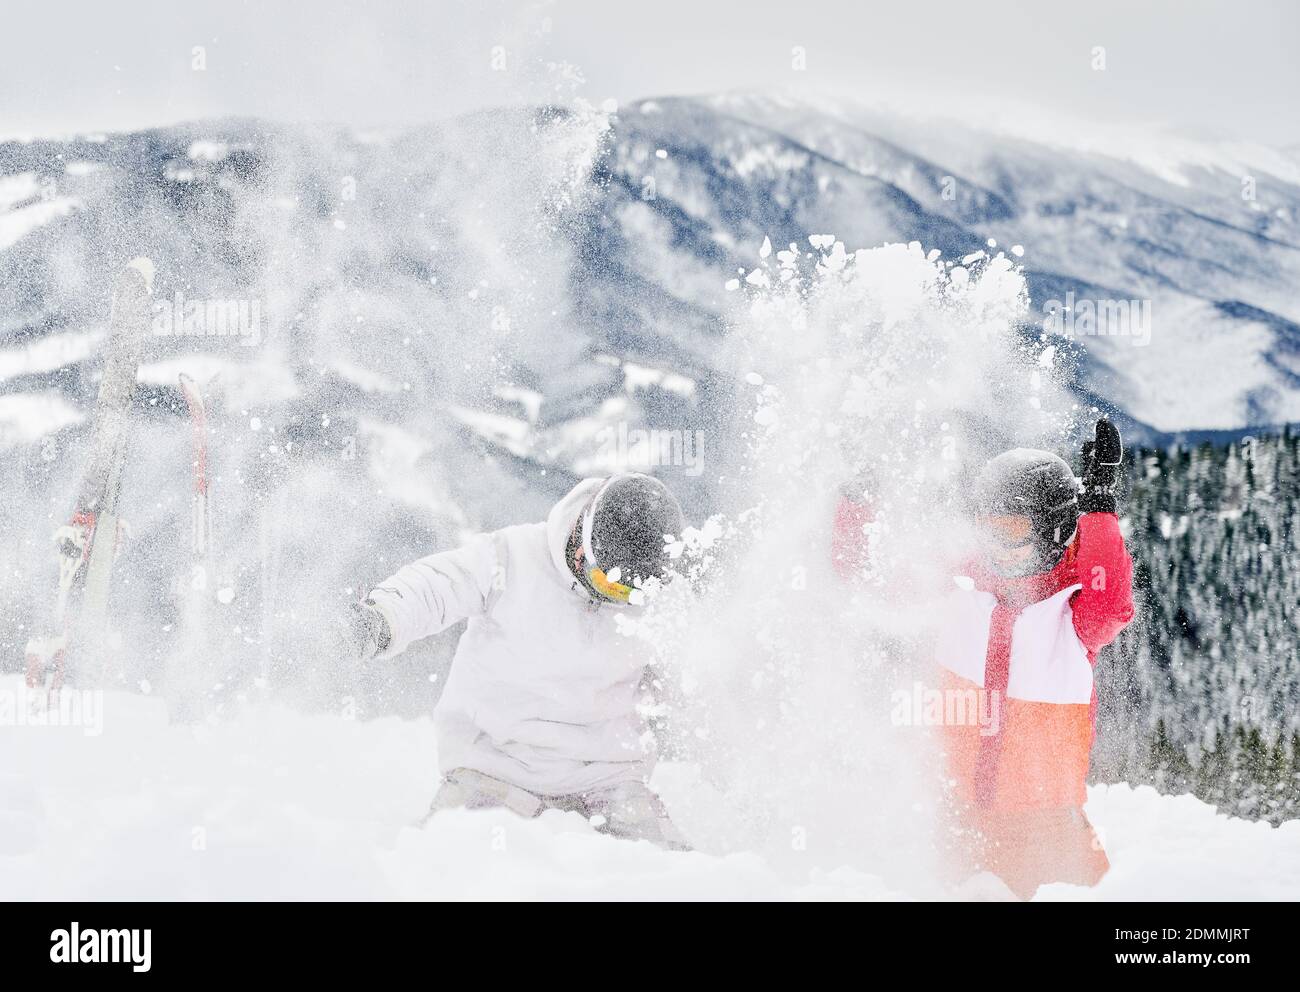 Junge Touristen spielen im Schnee gegen faszinierende Landschaften im Hintergrund und werfen Schnee. Lebendige bunte Anzüge auf weißem Schnee. Konzept für unvergessliche Momente Stockfoto